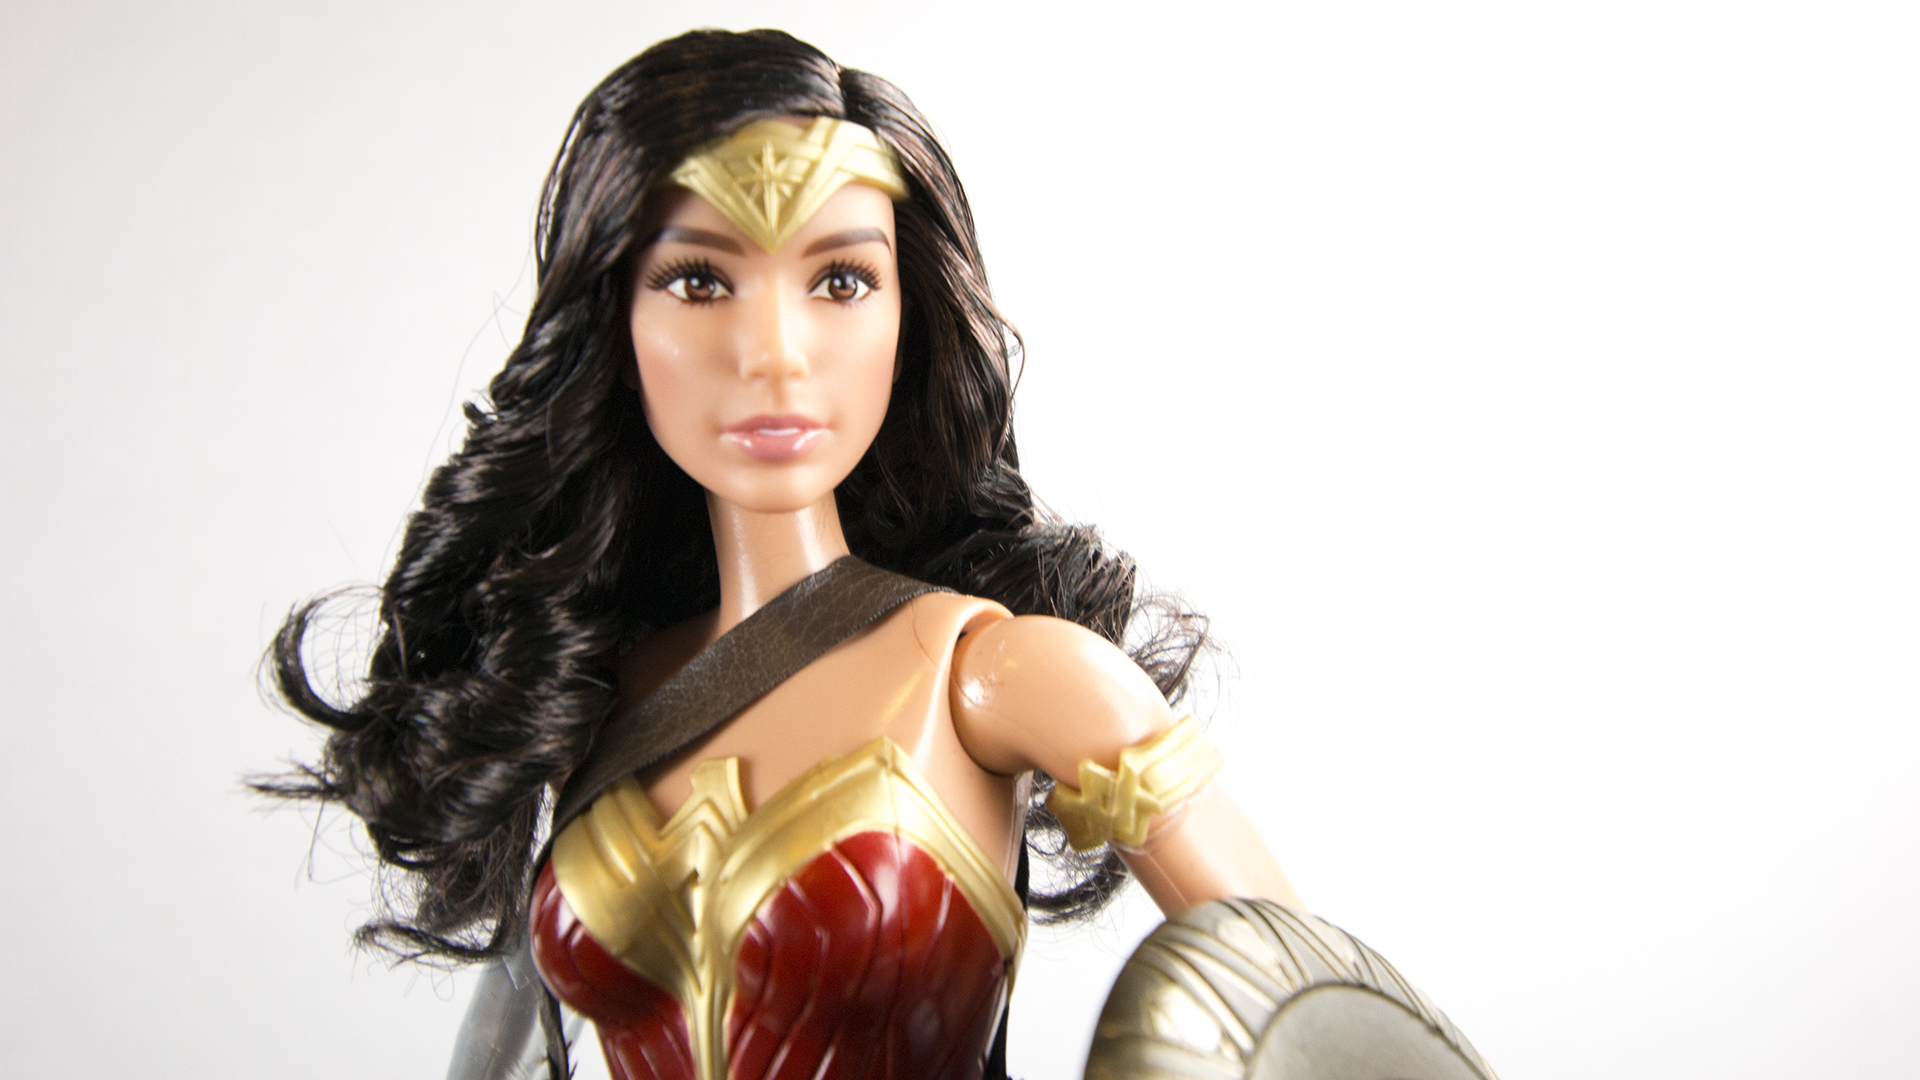 Wonder Woman Makes Barbie Look Good